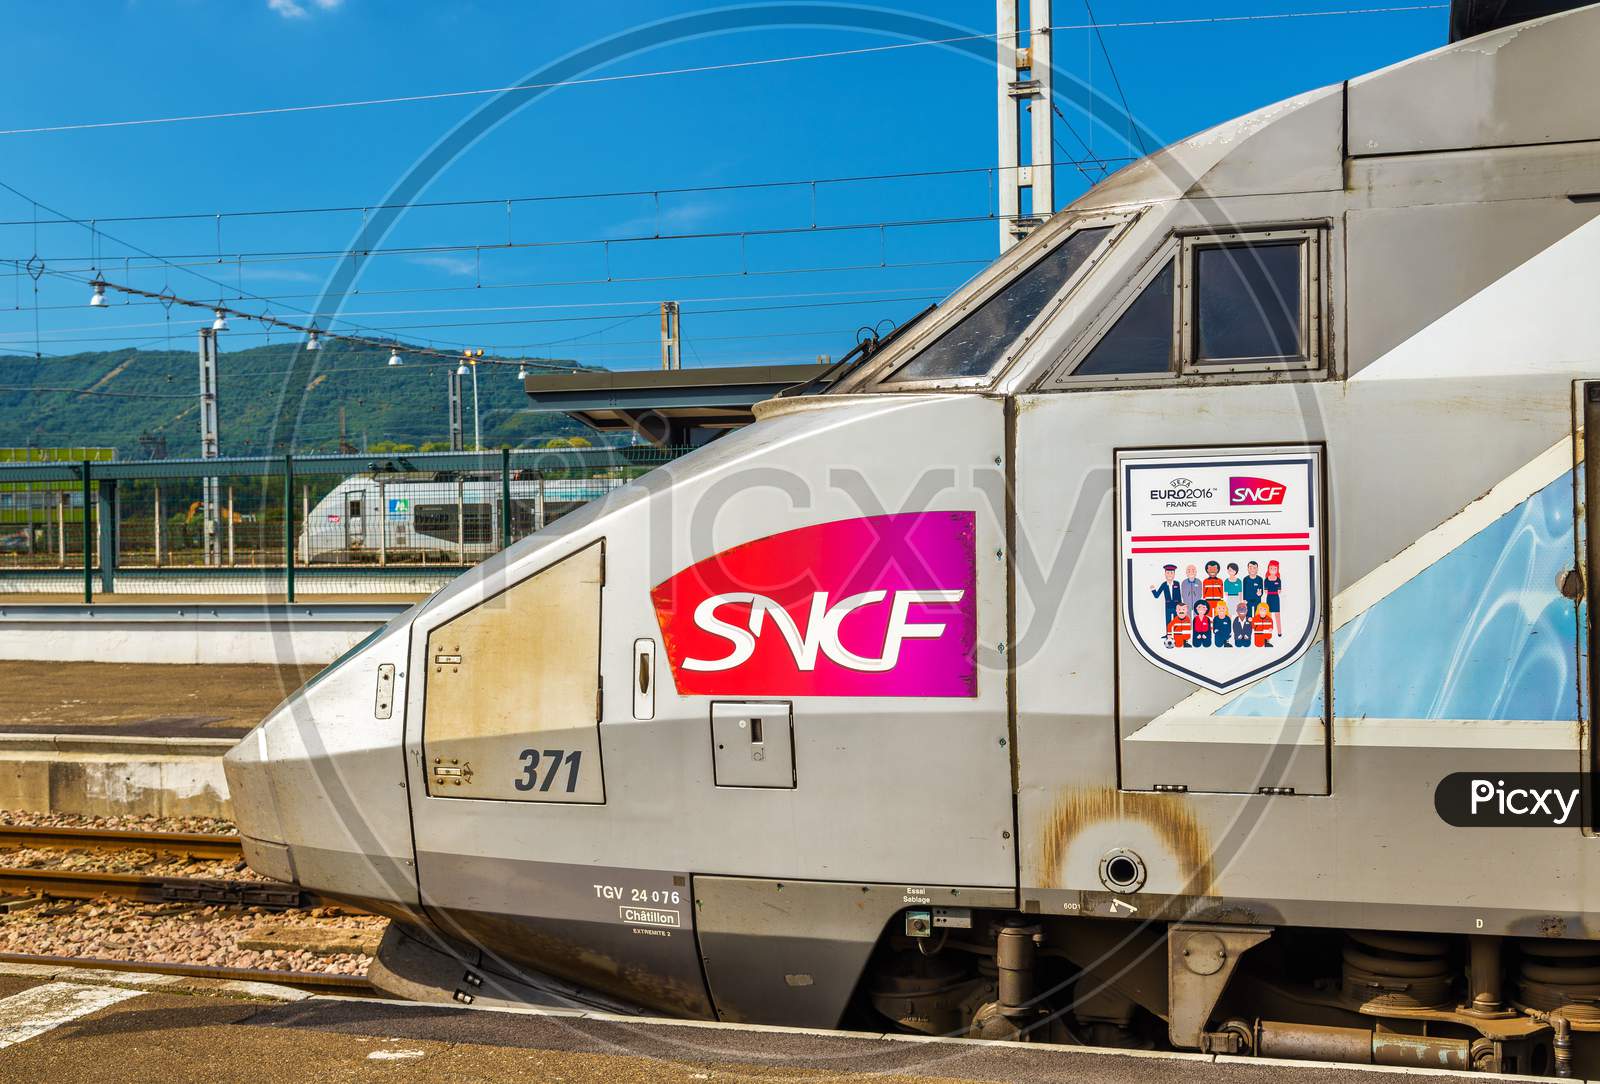 Tgv Trainset With The Logo Of Uefa Euro-2016 At Hendaye Railway Station